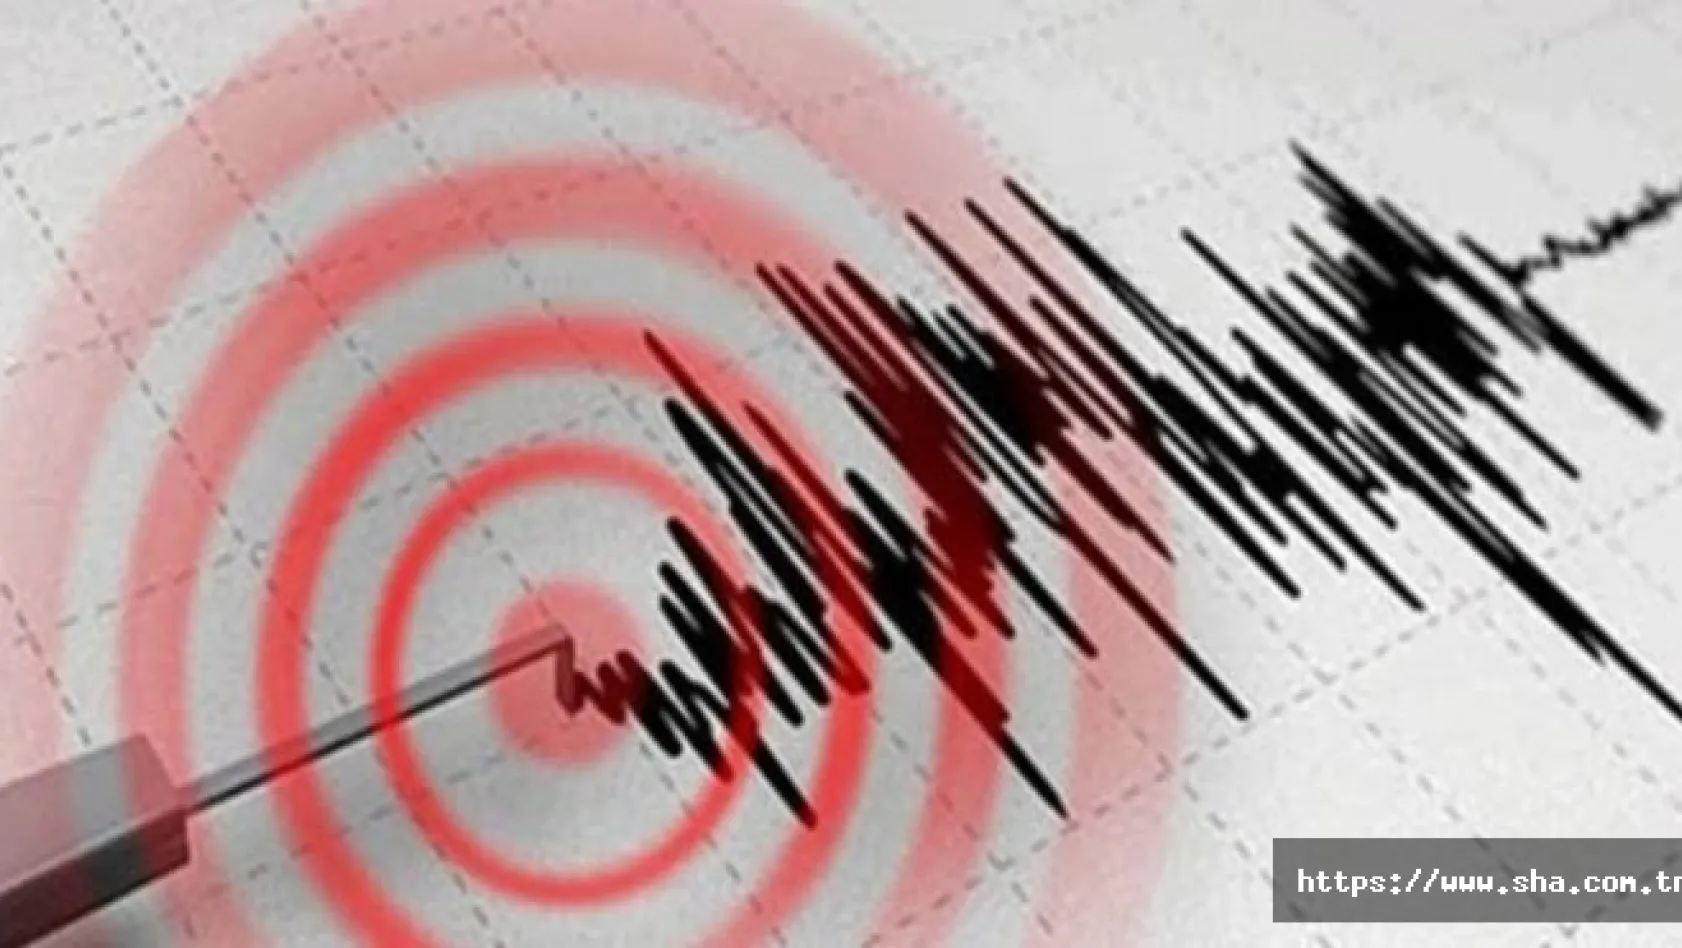 Jeologlardan İstanbul depremi uyarısı: Sismik aktivite sürüyor